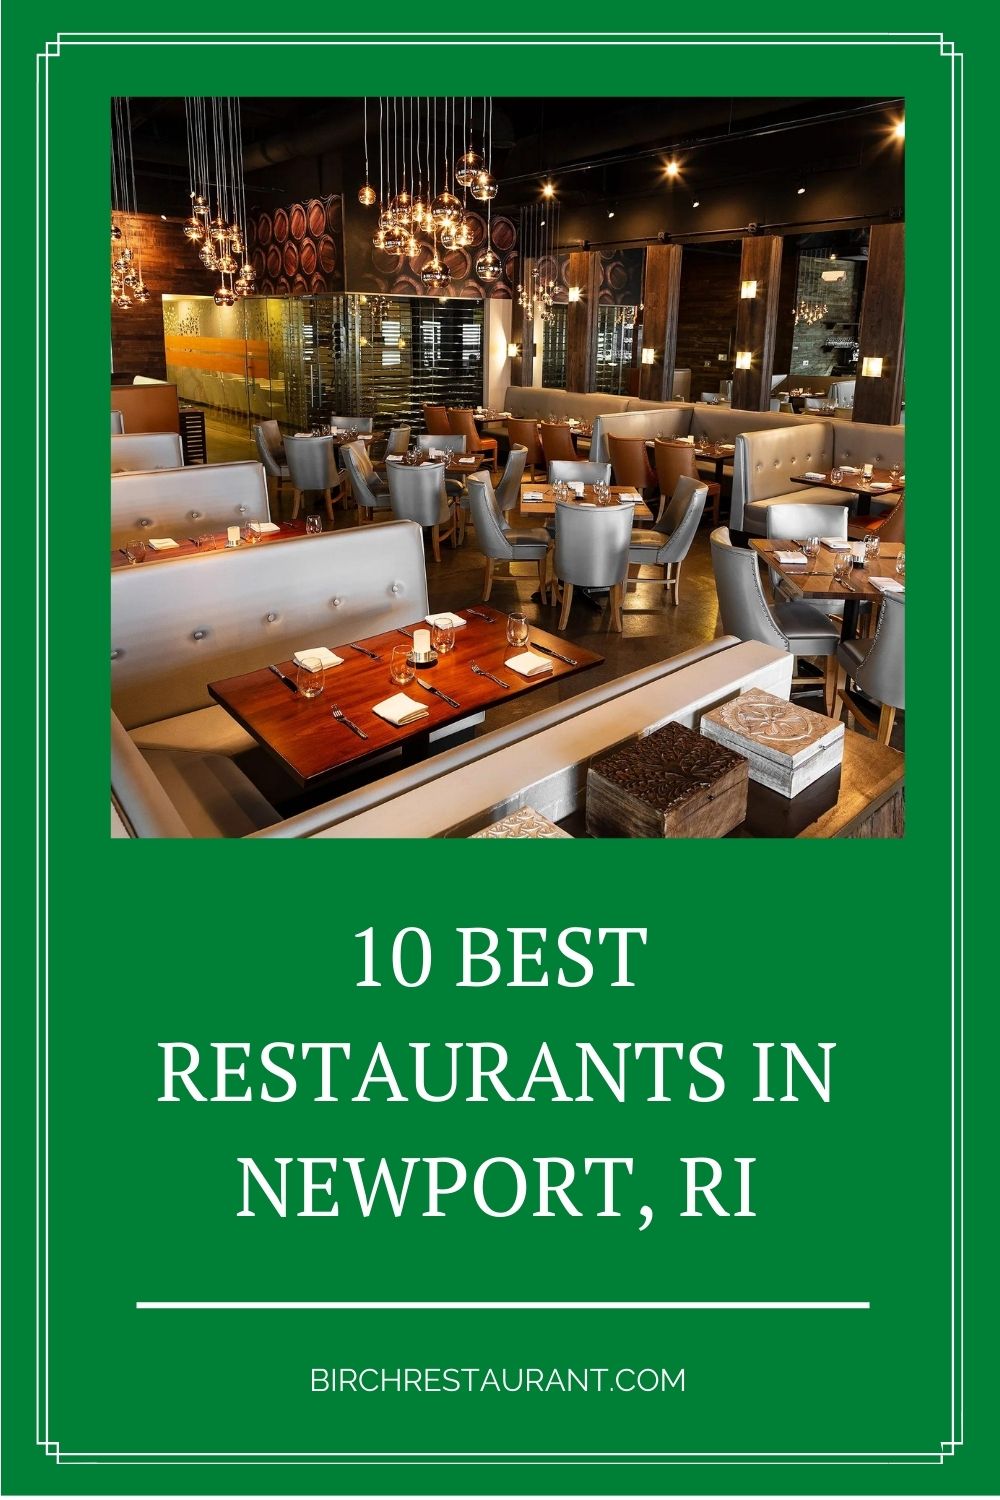 Best Restaurants in Newport